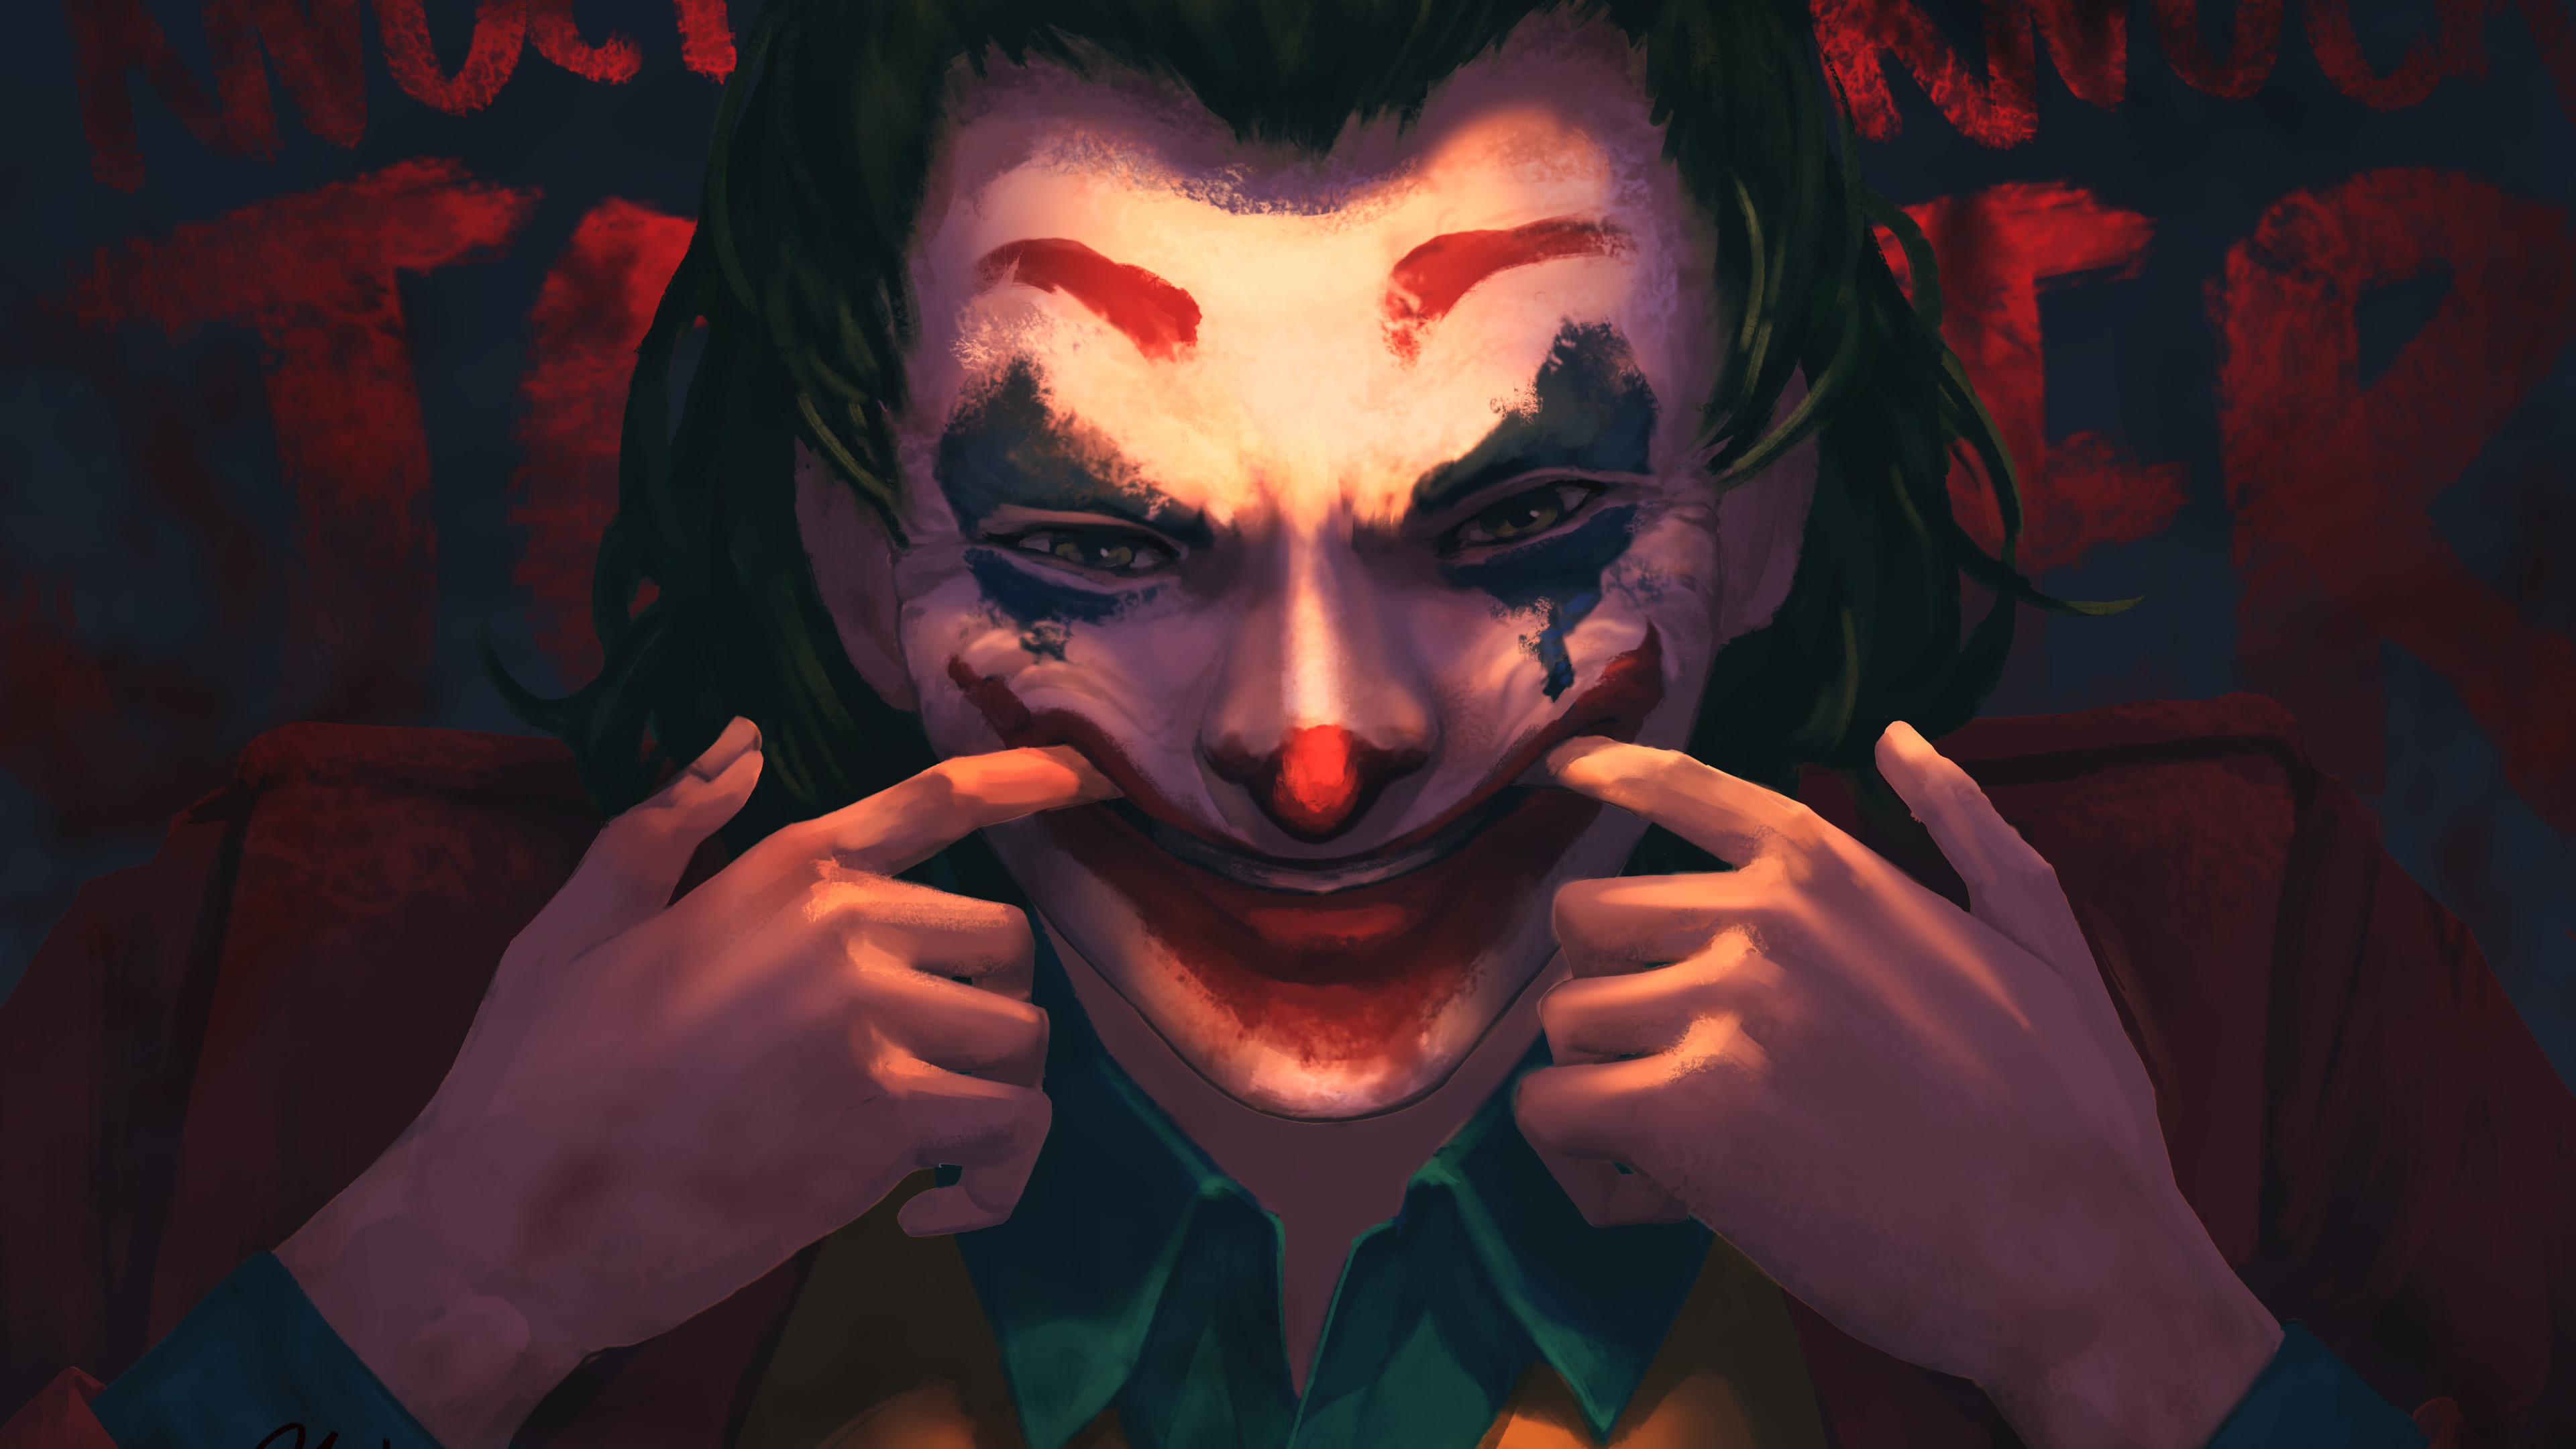 Joker Devil Smile - Joker Wallpaper Smile 2019 , HD Wallpaper & Backgrounds